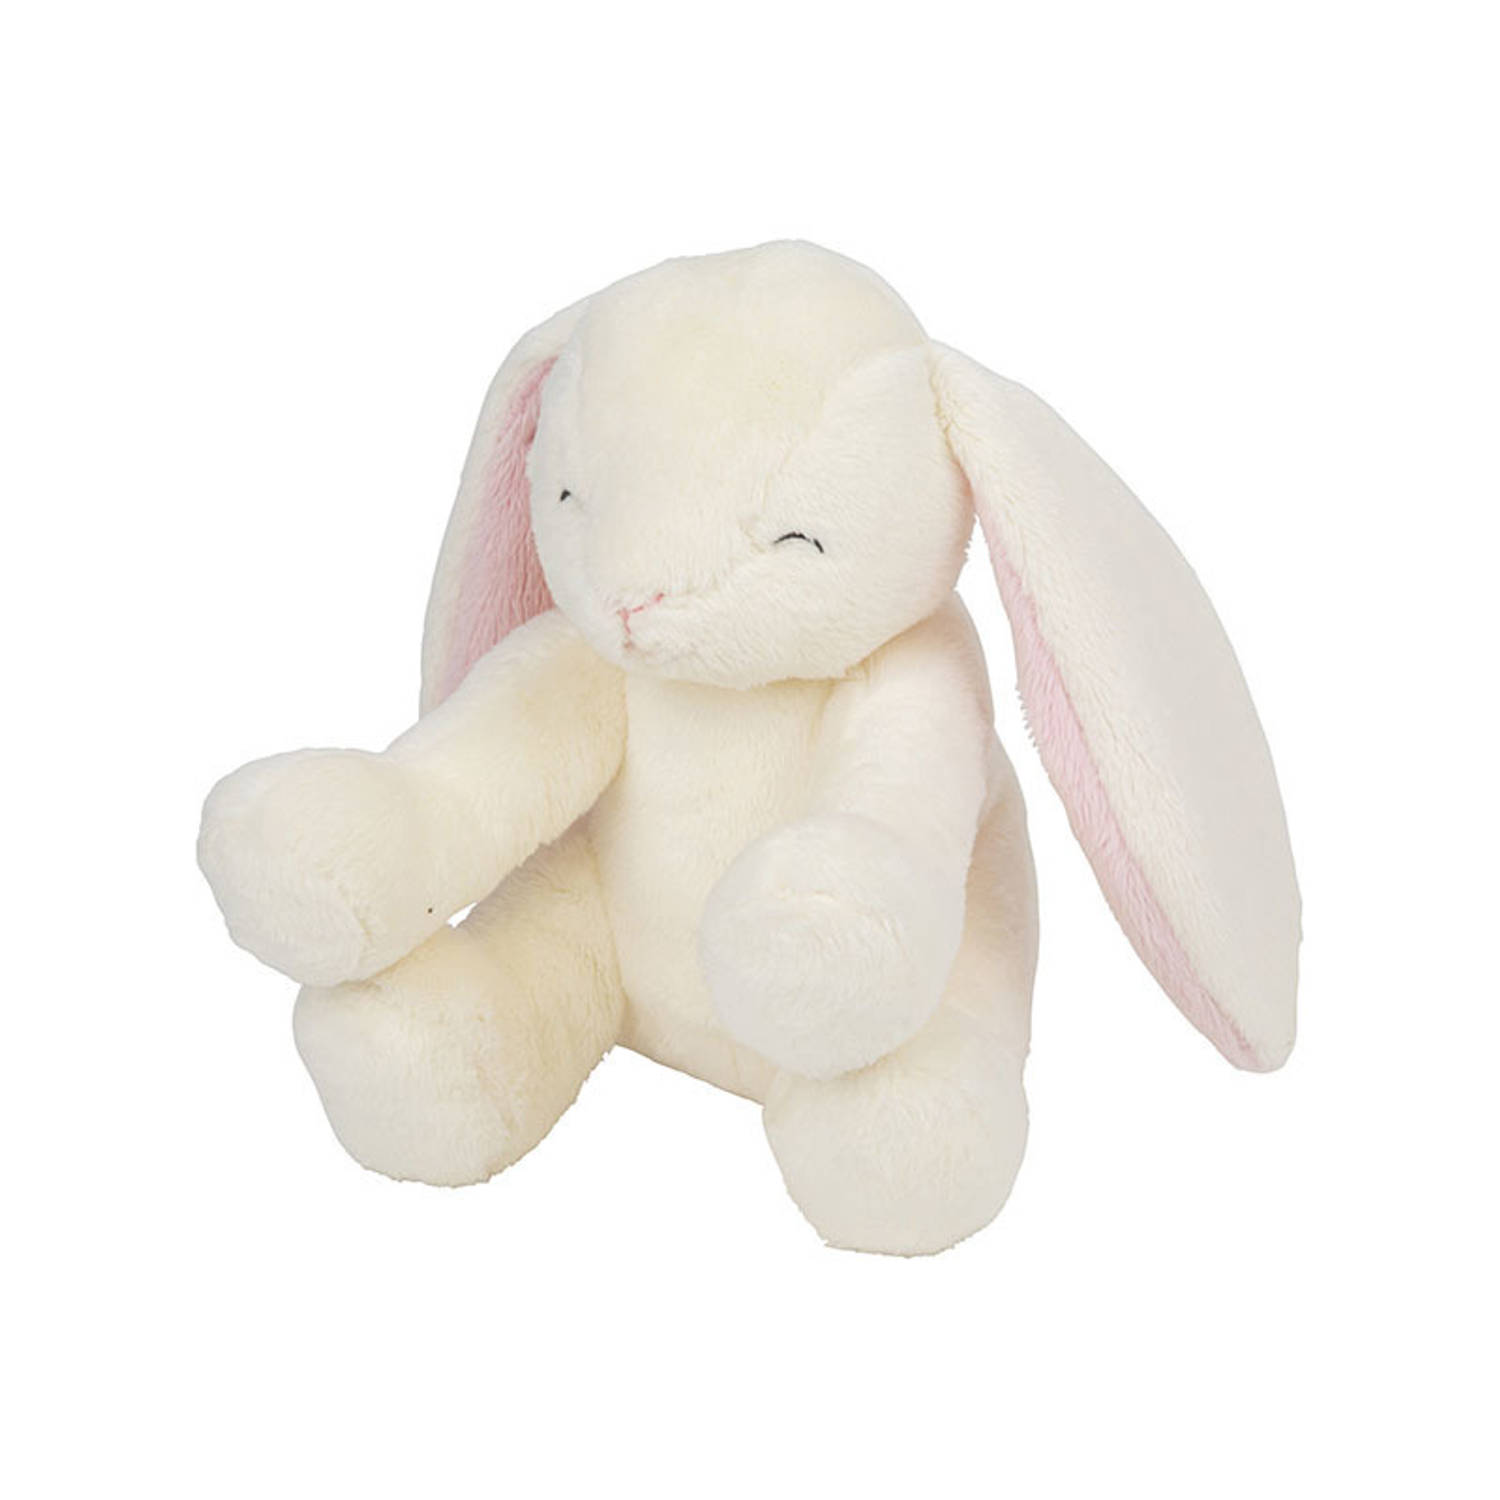 Nature Planet Pluche knuffel konijn van 20 cm - Speelgoed knuffeldieren konijnen (100% oeko-tex gecertificeerd)